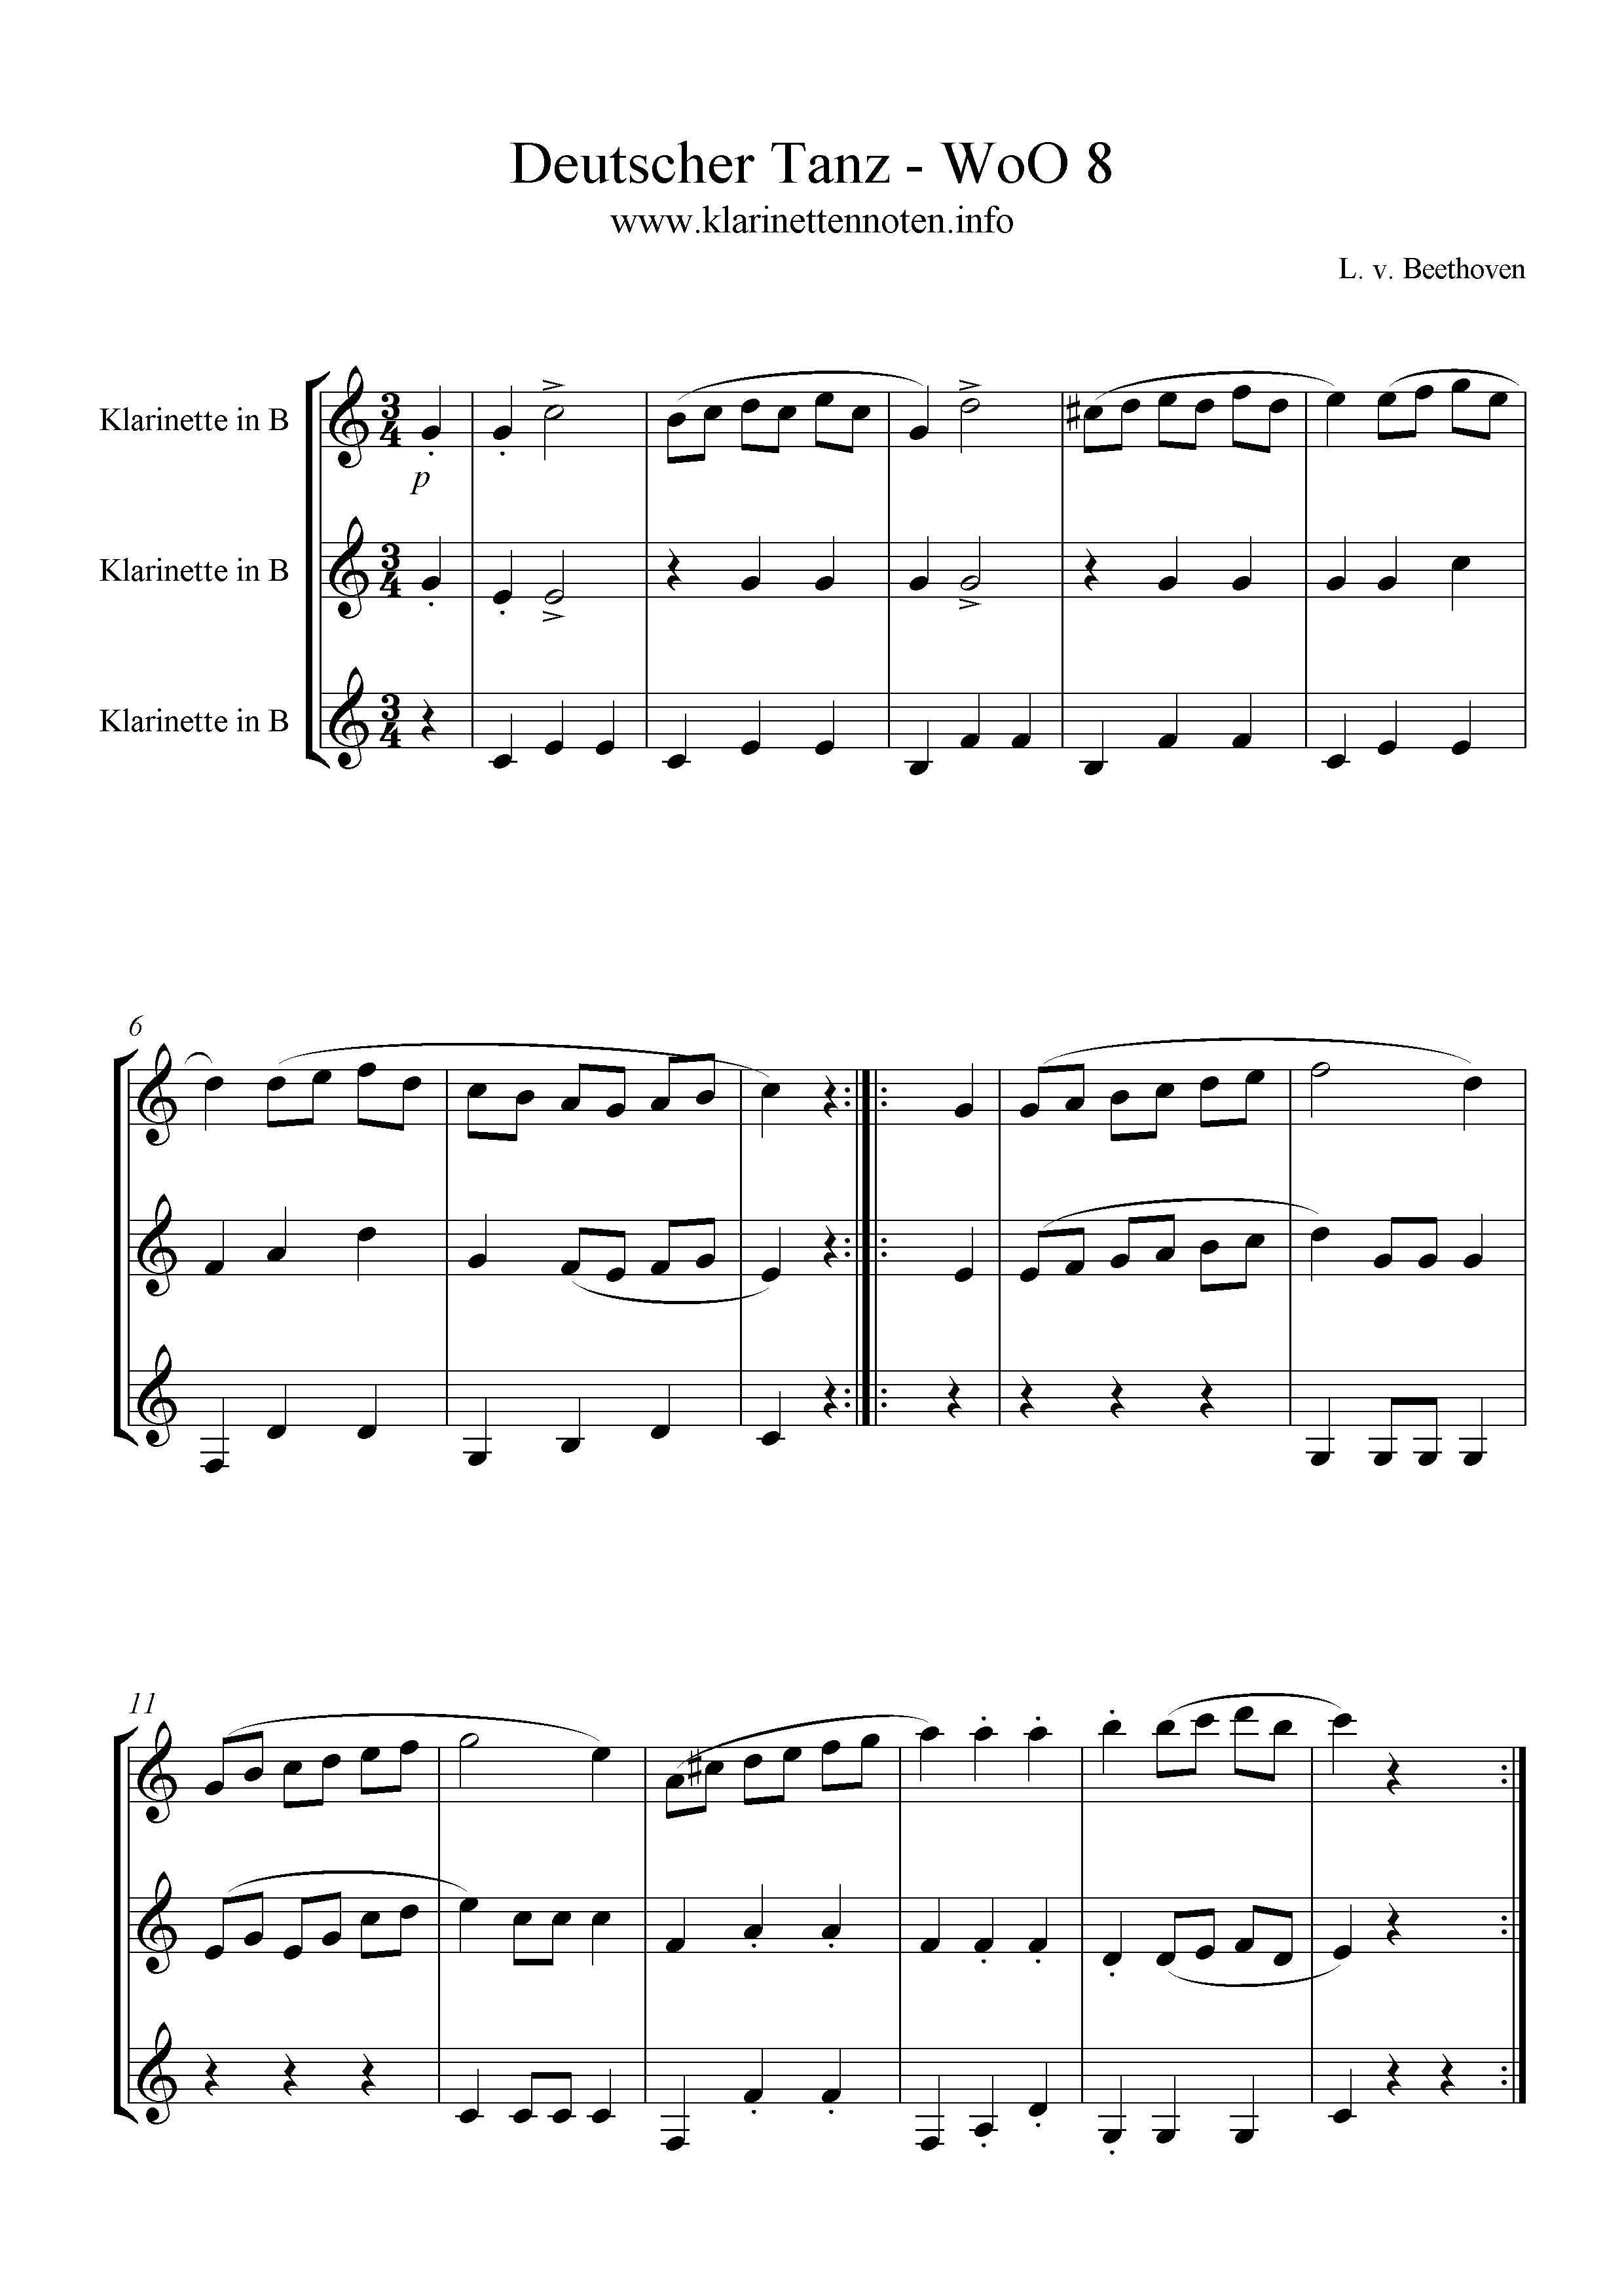 Klarinettentrio, WoO8 Deutscher Tanz, Beethoven